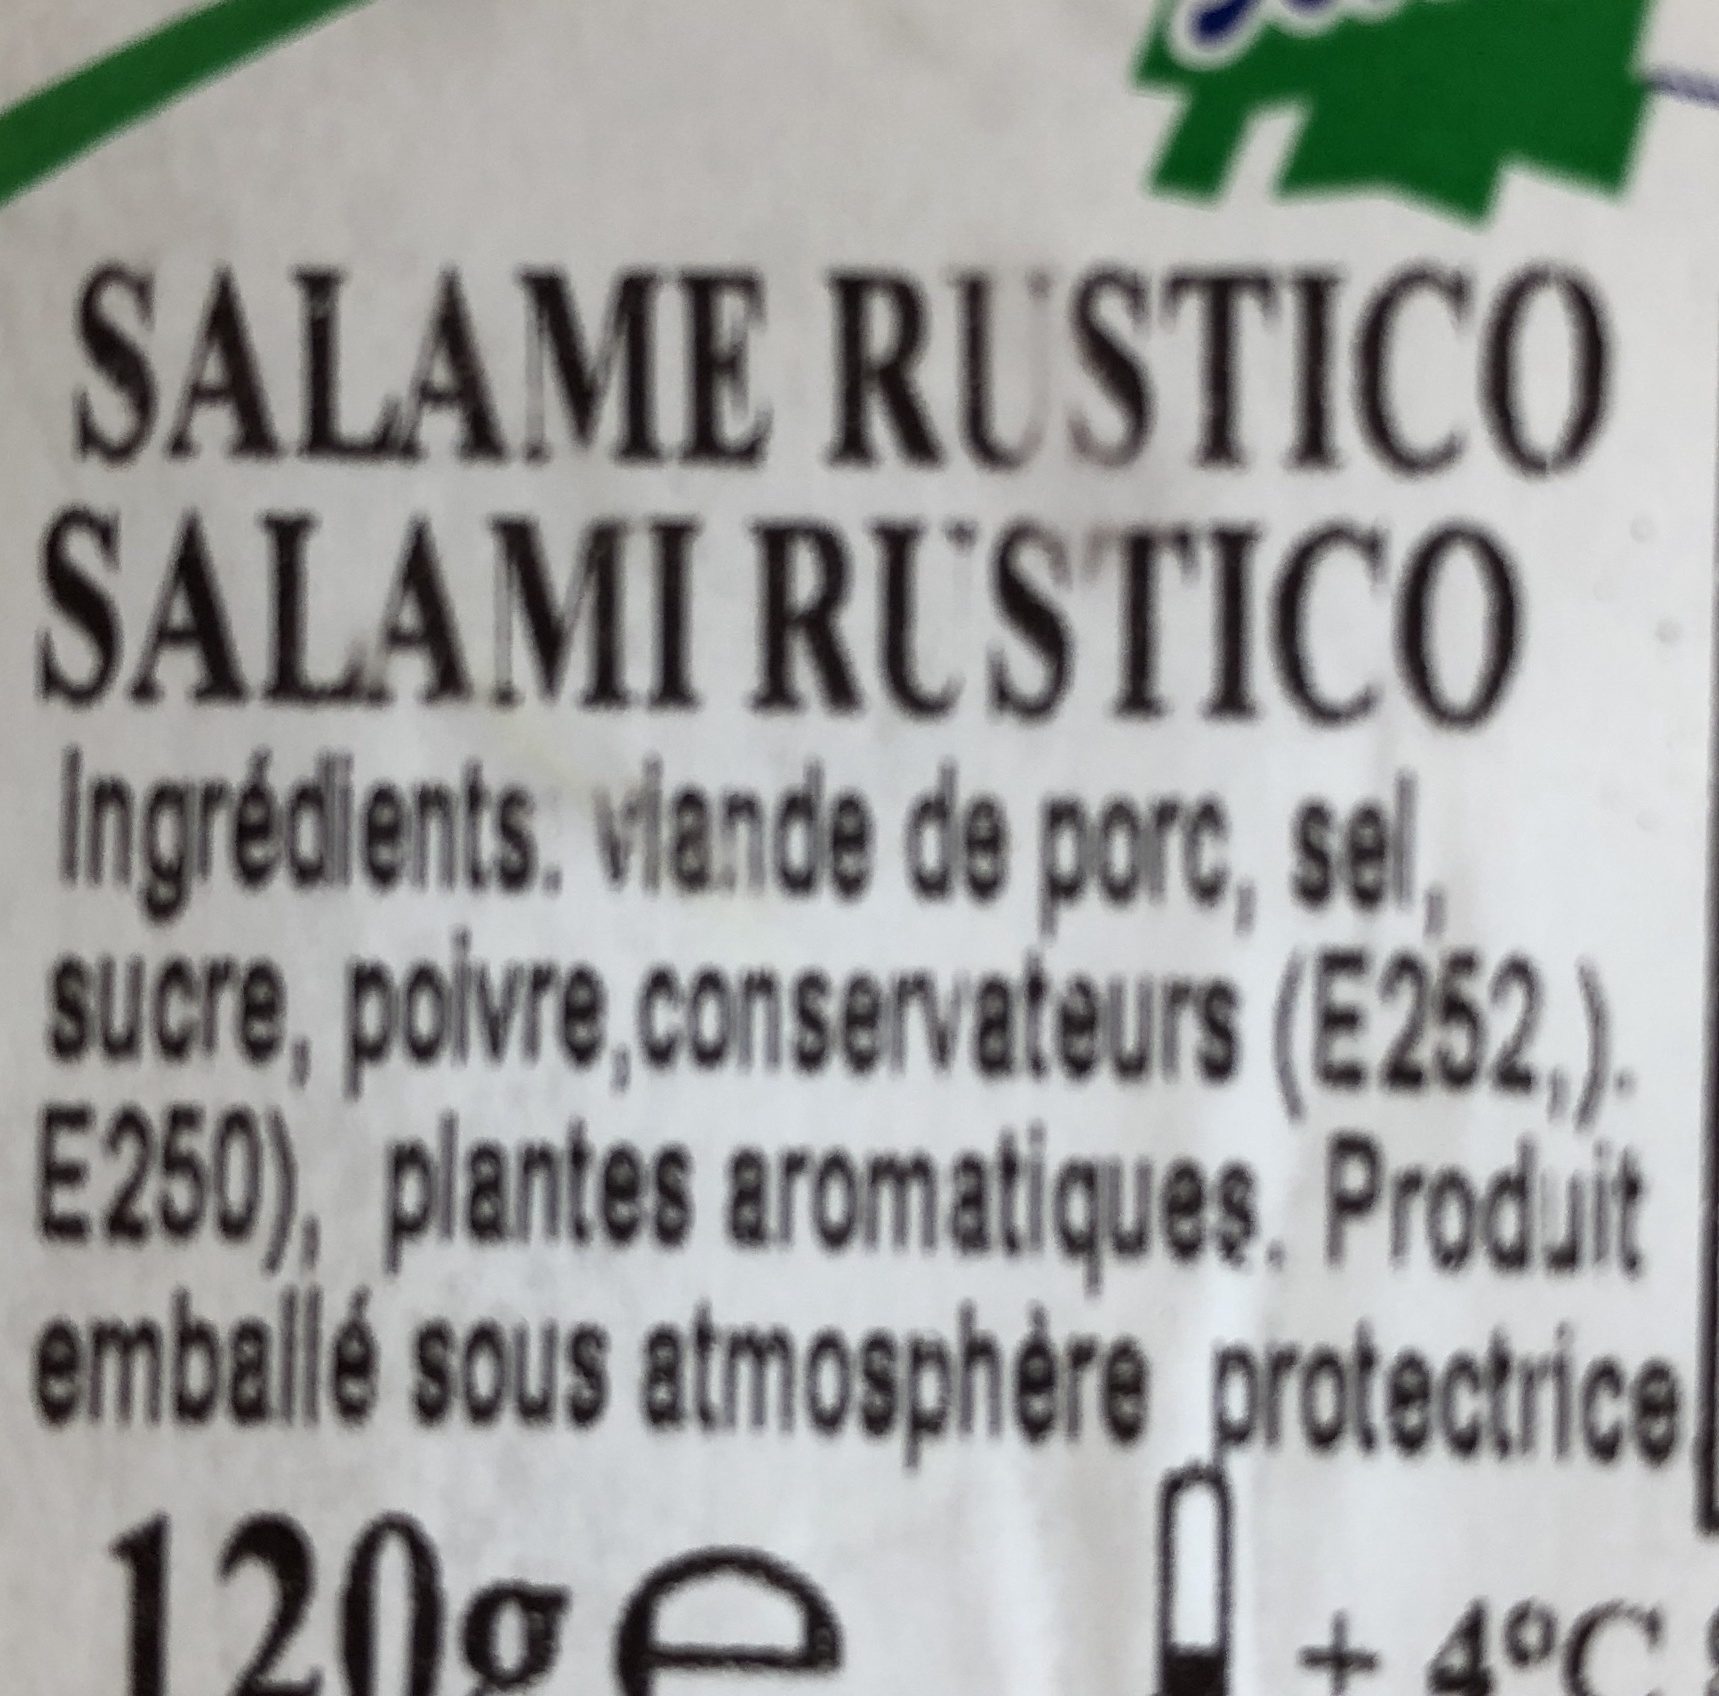 Salame rustico - Ingrédients